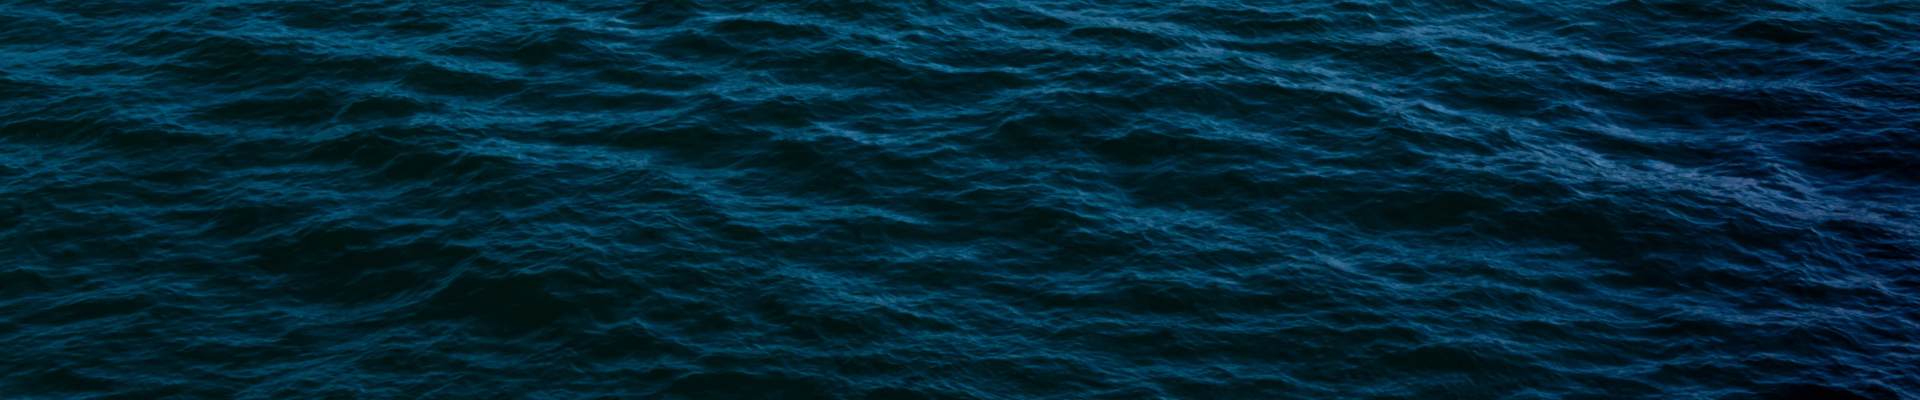 deepblue-ocean-waves-banner_1920x400